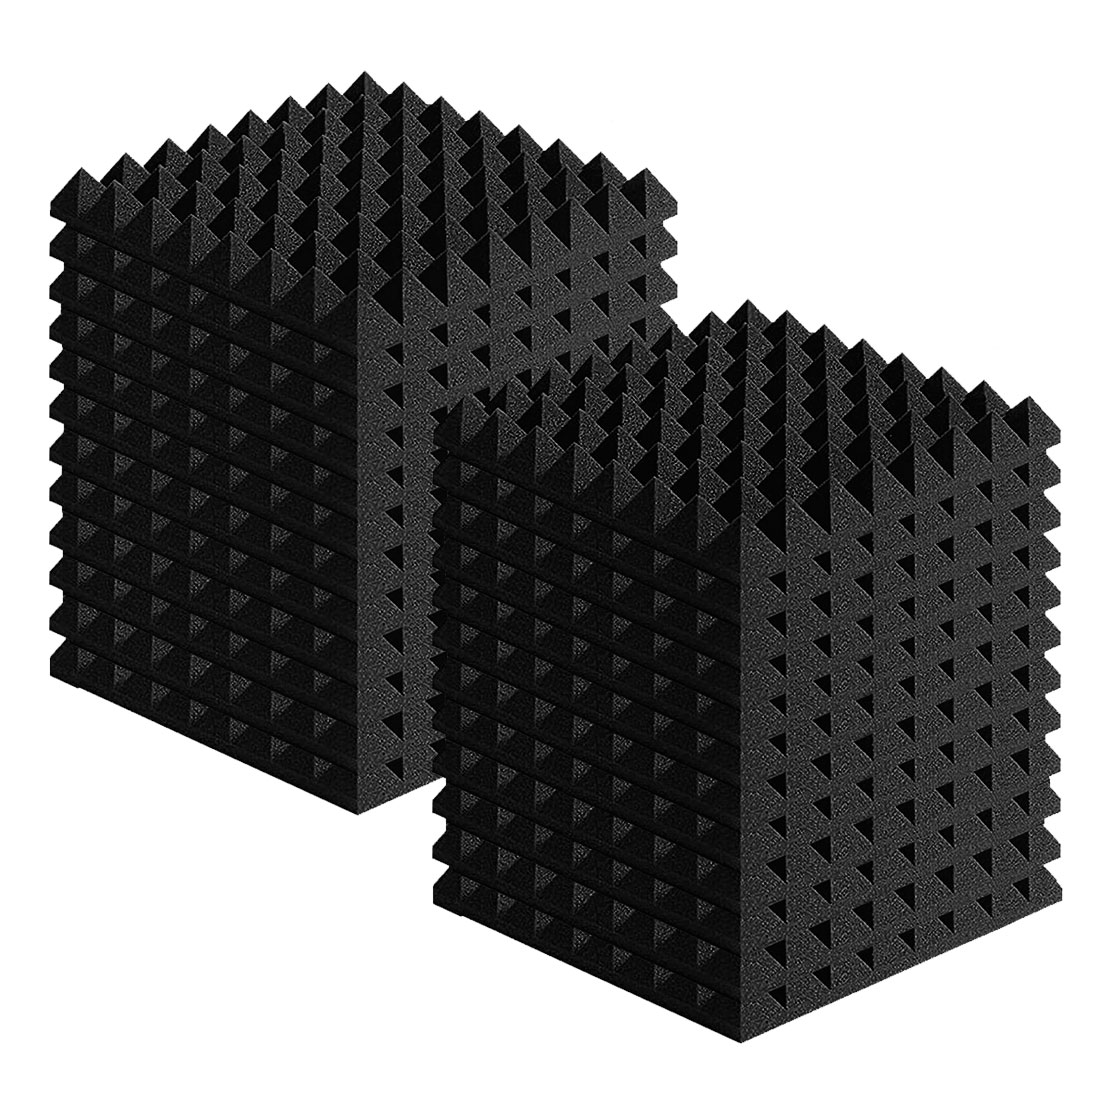 吸音材 防音 壁 50*50cm 厚さ5cm 48枚セット 防音材 ウレタン 高反発高密度 部屋防音 不燃 無害 減震 ピラミッド型 | AMOR